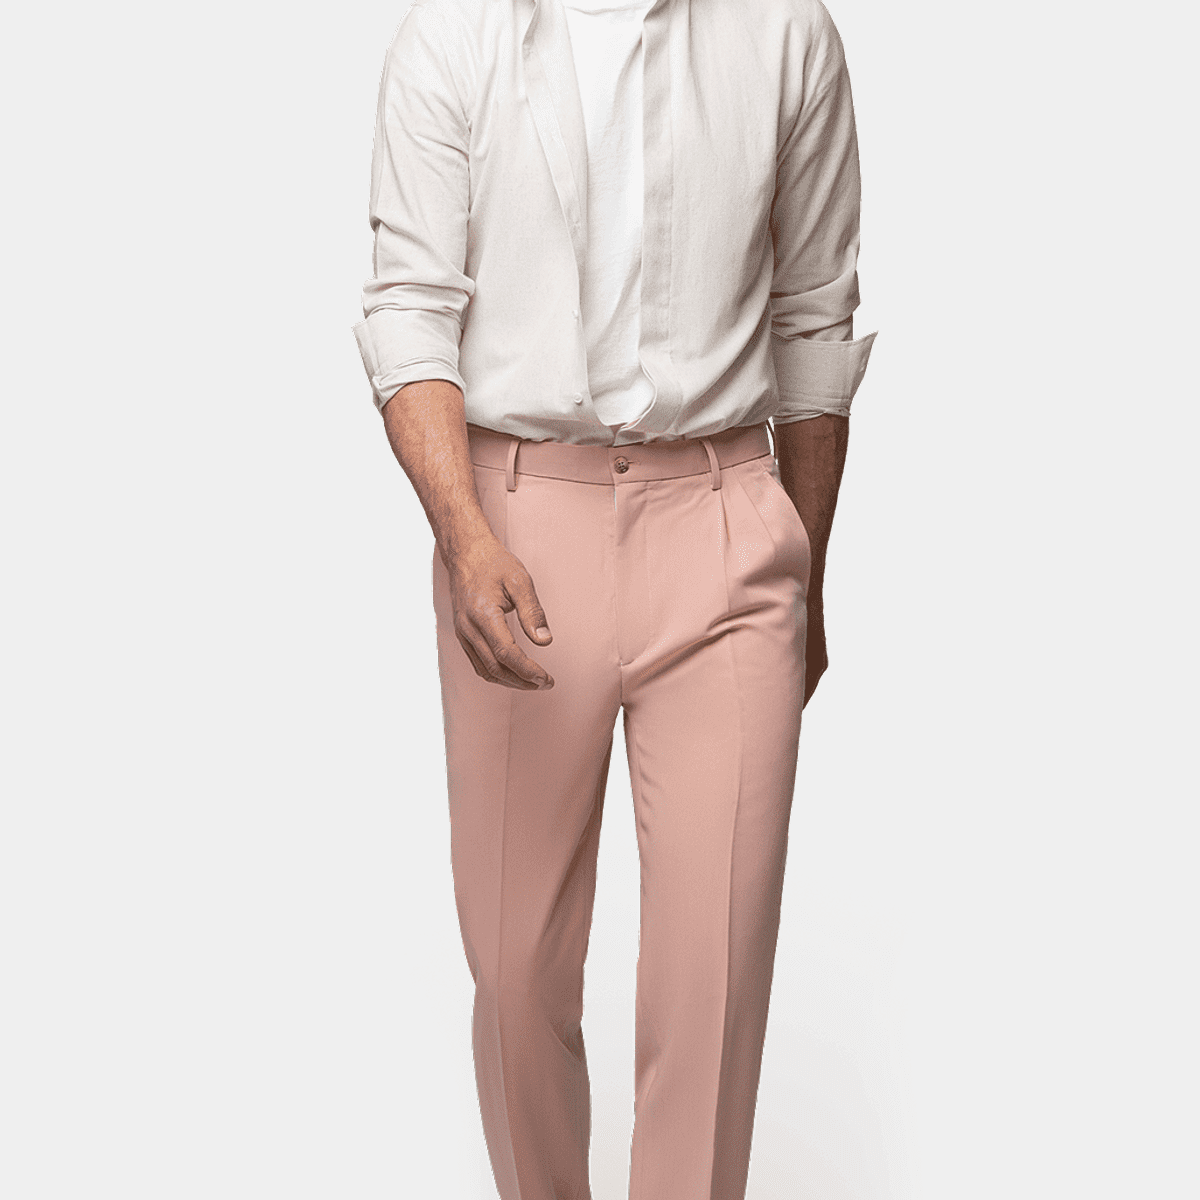 Buy Highlander Pink Slim Fit Trouser for Men Online at Rs.729 - Ketch